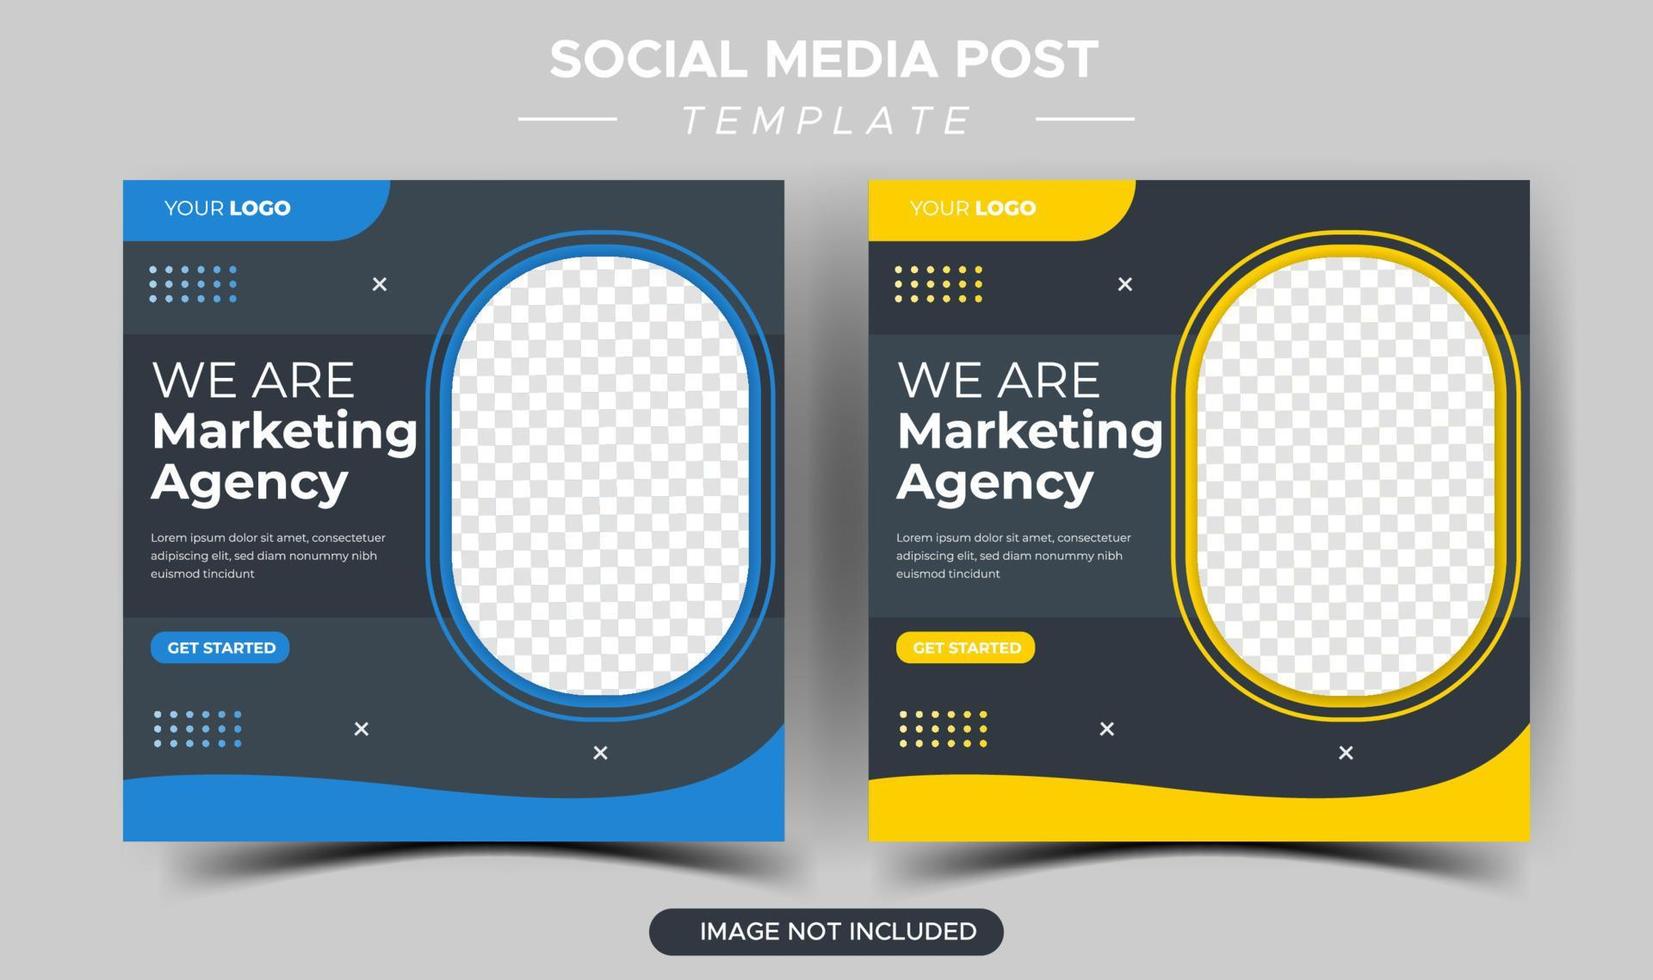 modèle de publication sur les médias sociaux d'expert en marketing d'entreprise créative vecteur